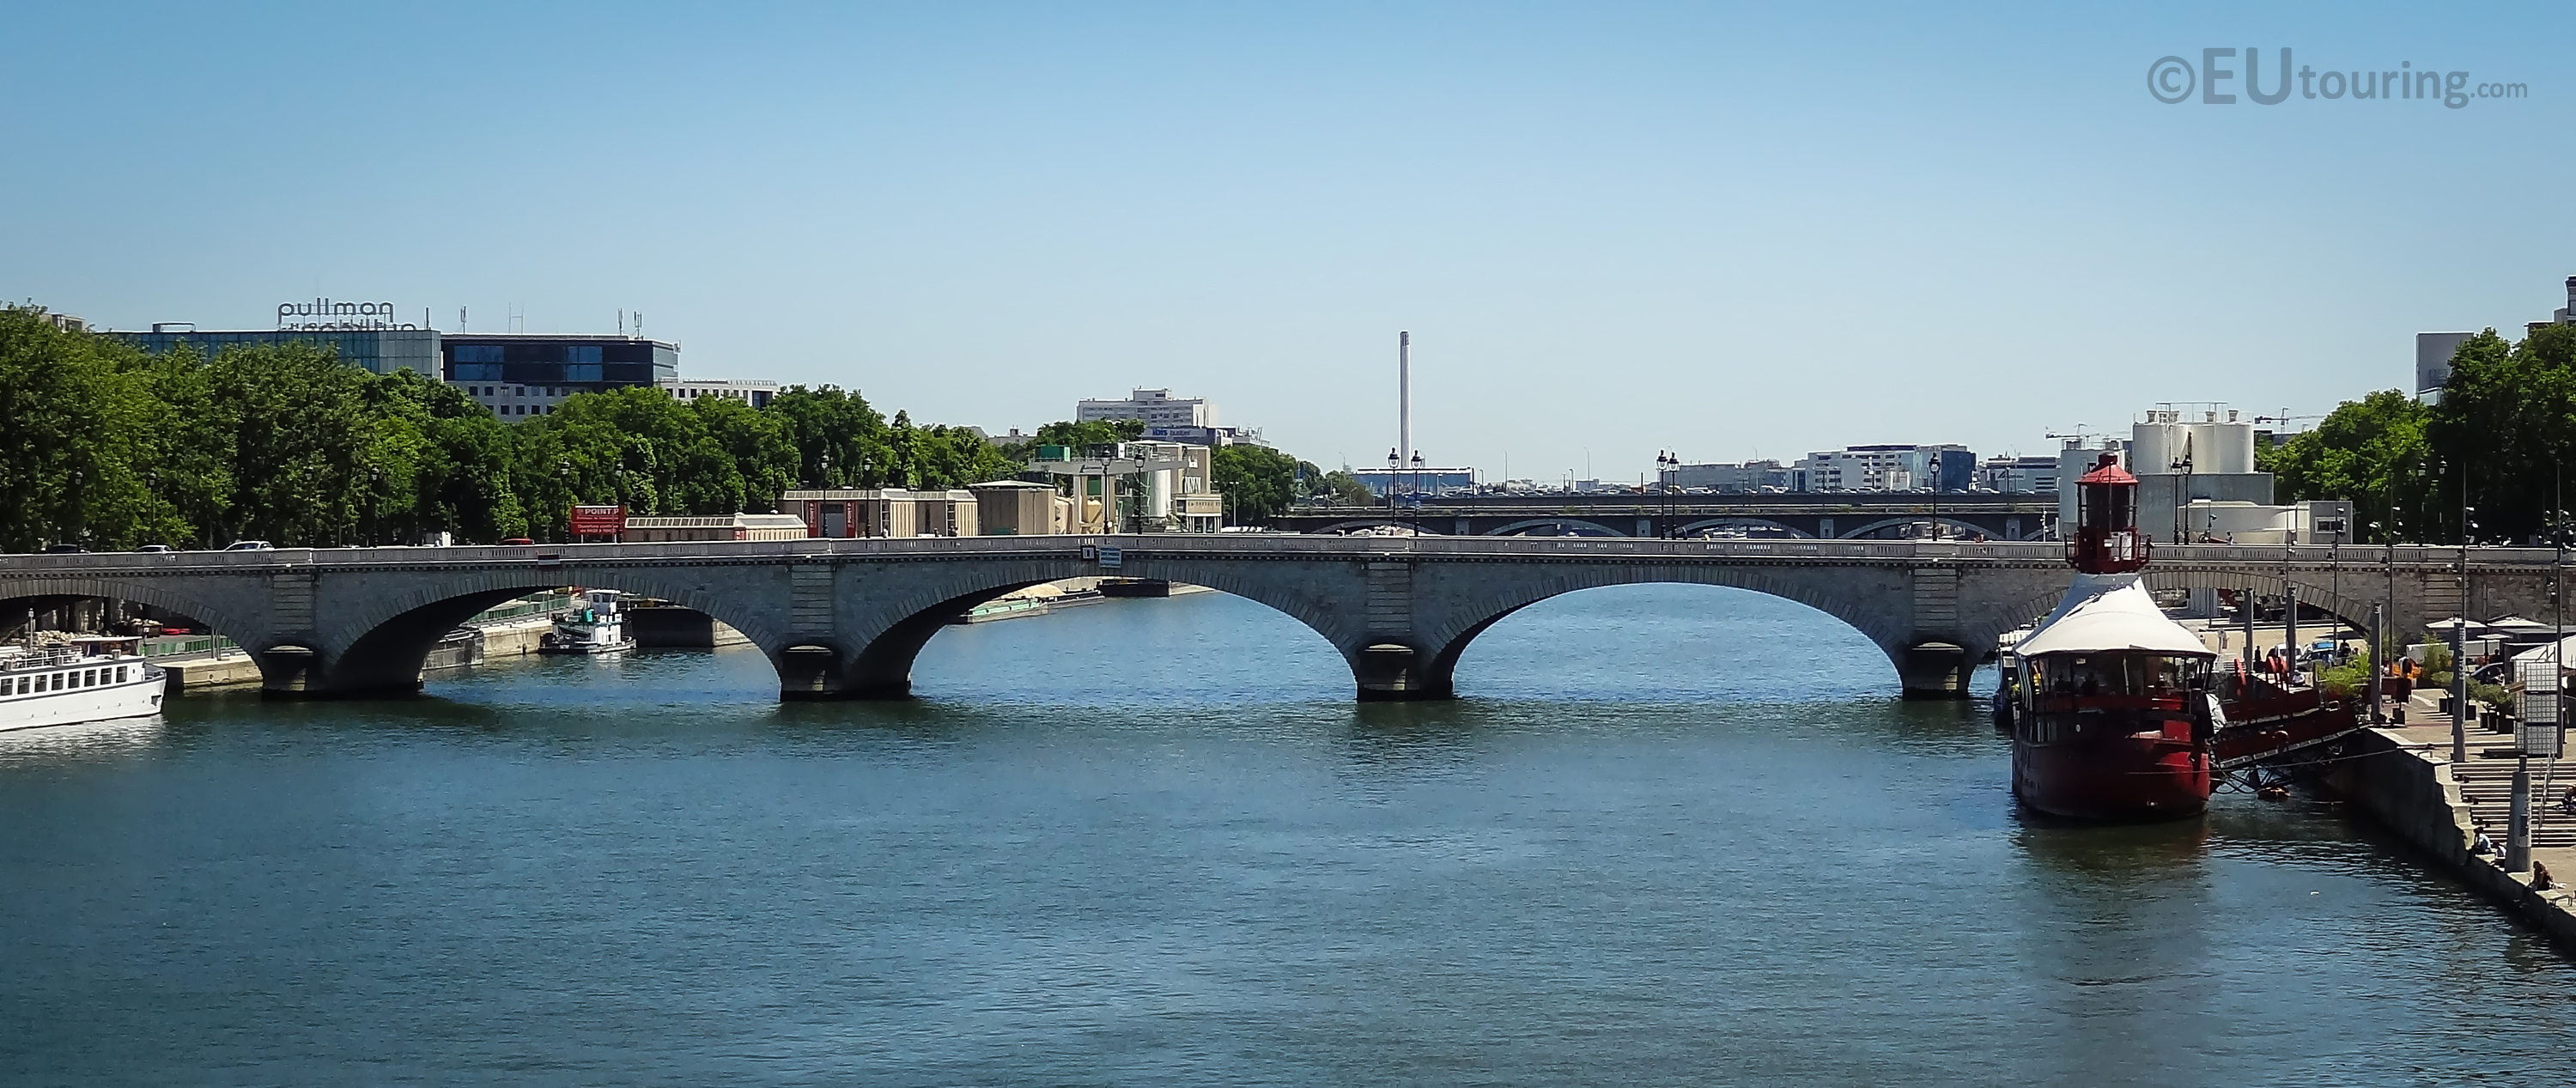 River Seine and Le Batofar